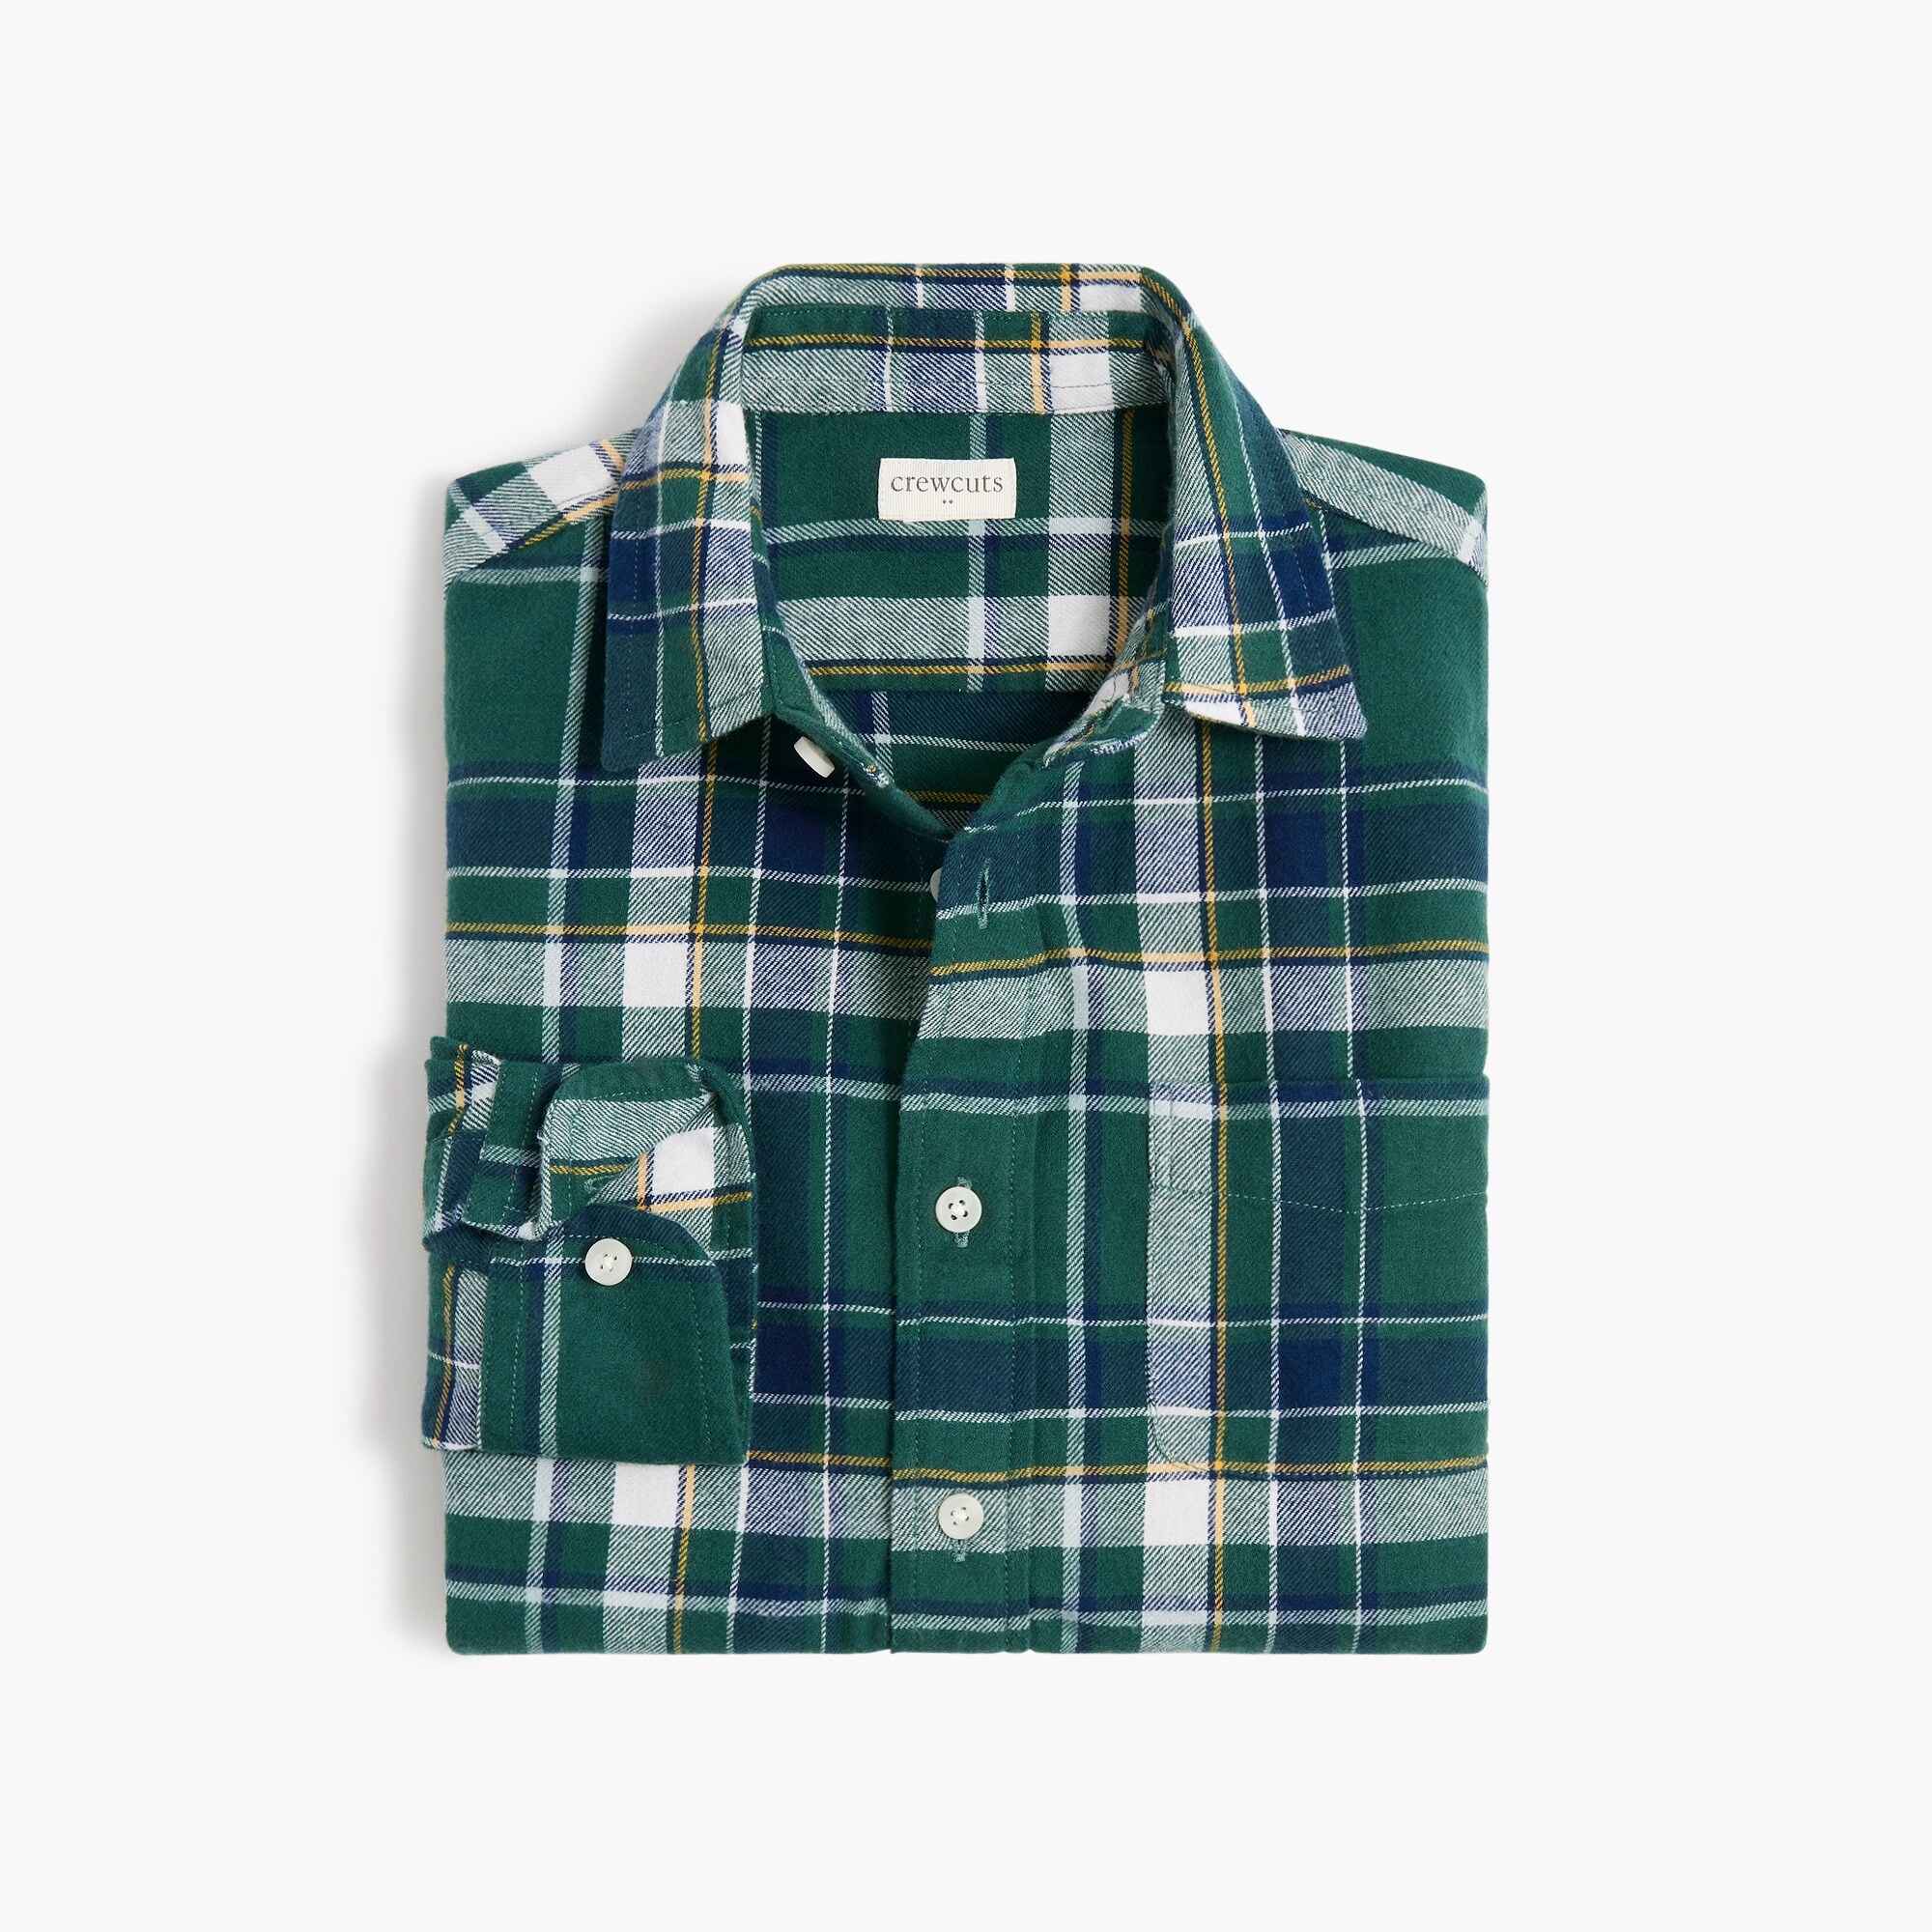  Boys' flannel shirt